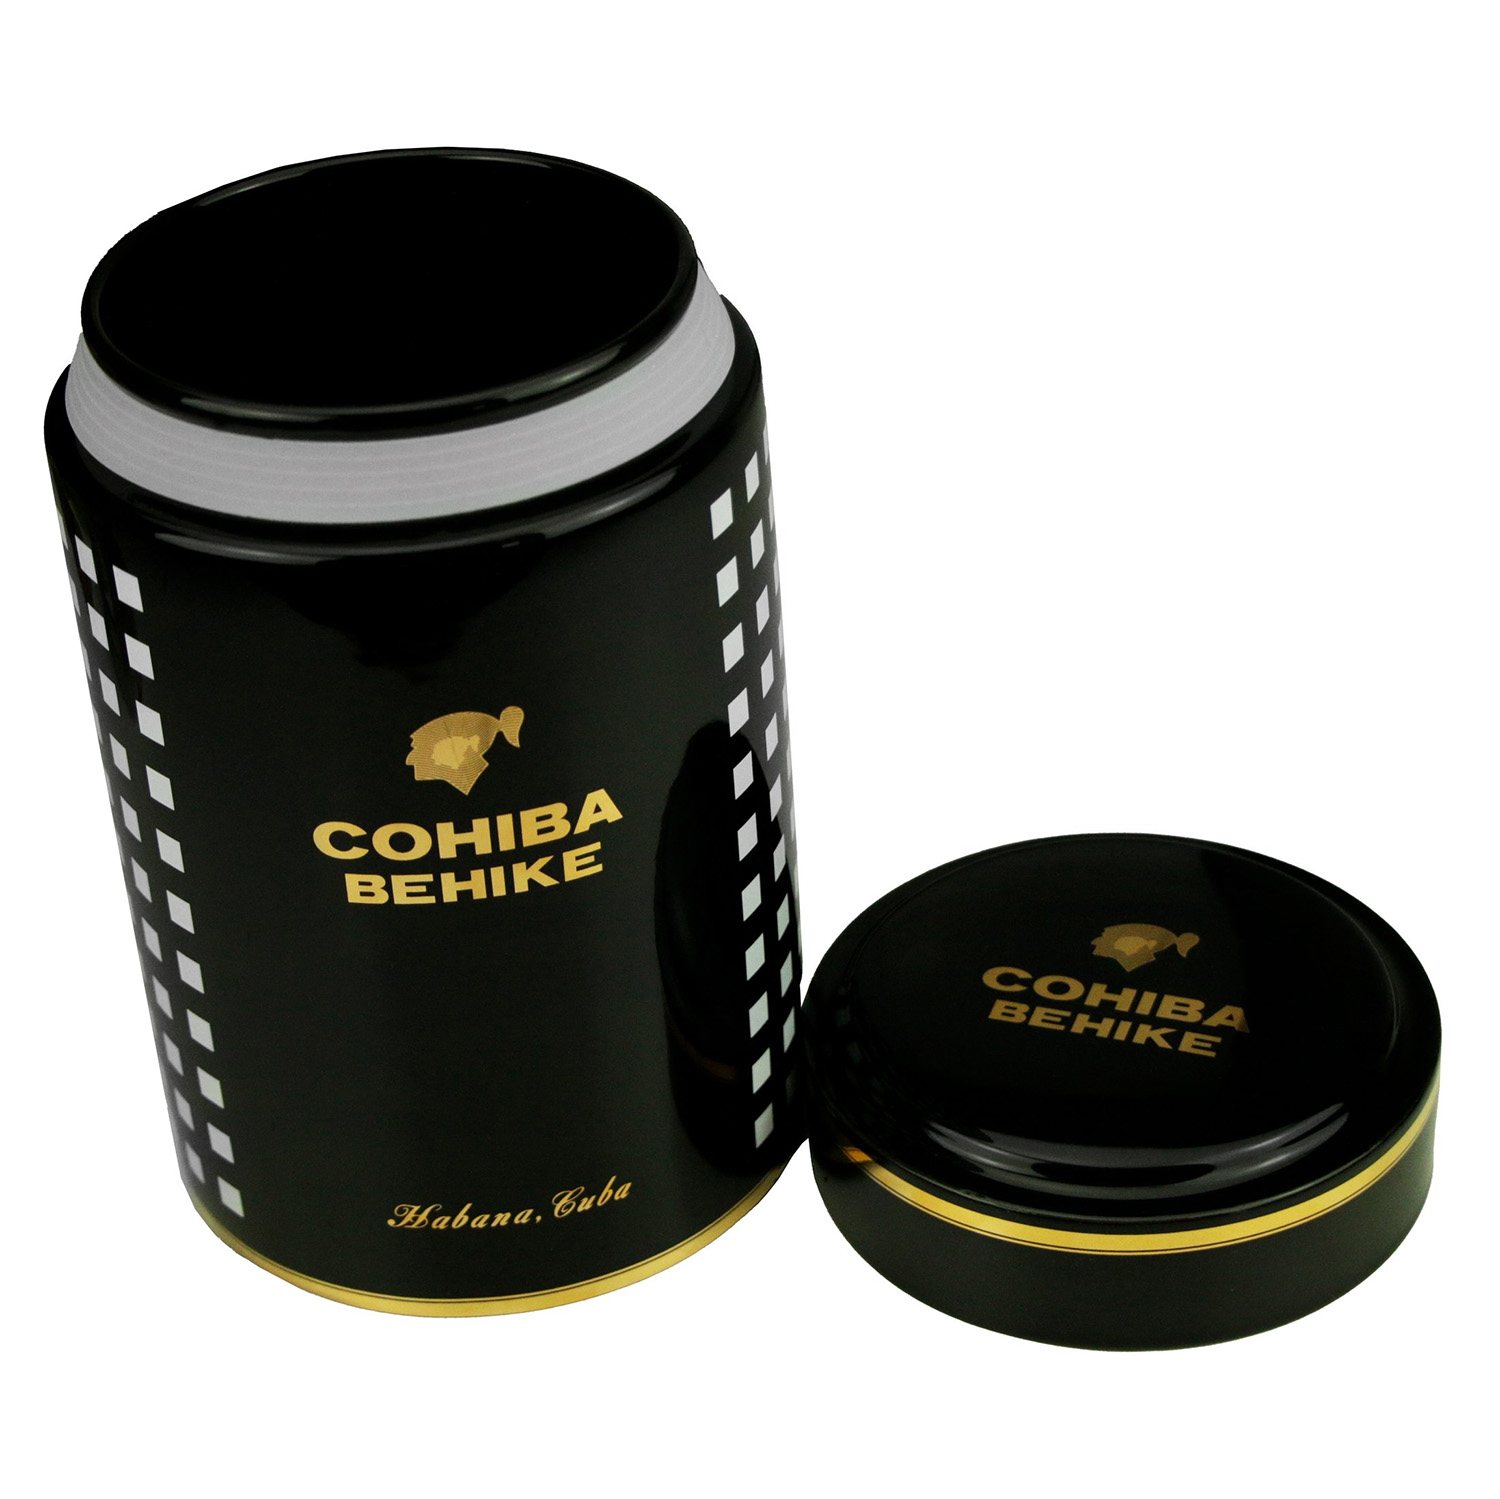 Cohiba Behike Jar (porcelain pot) - Empty